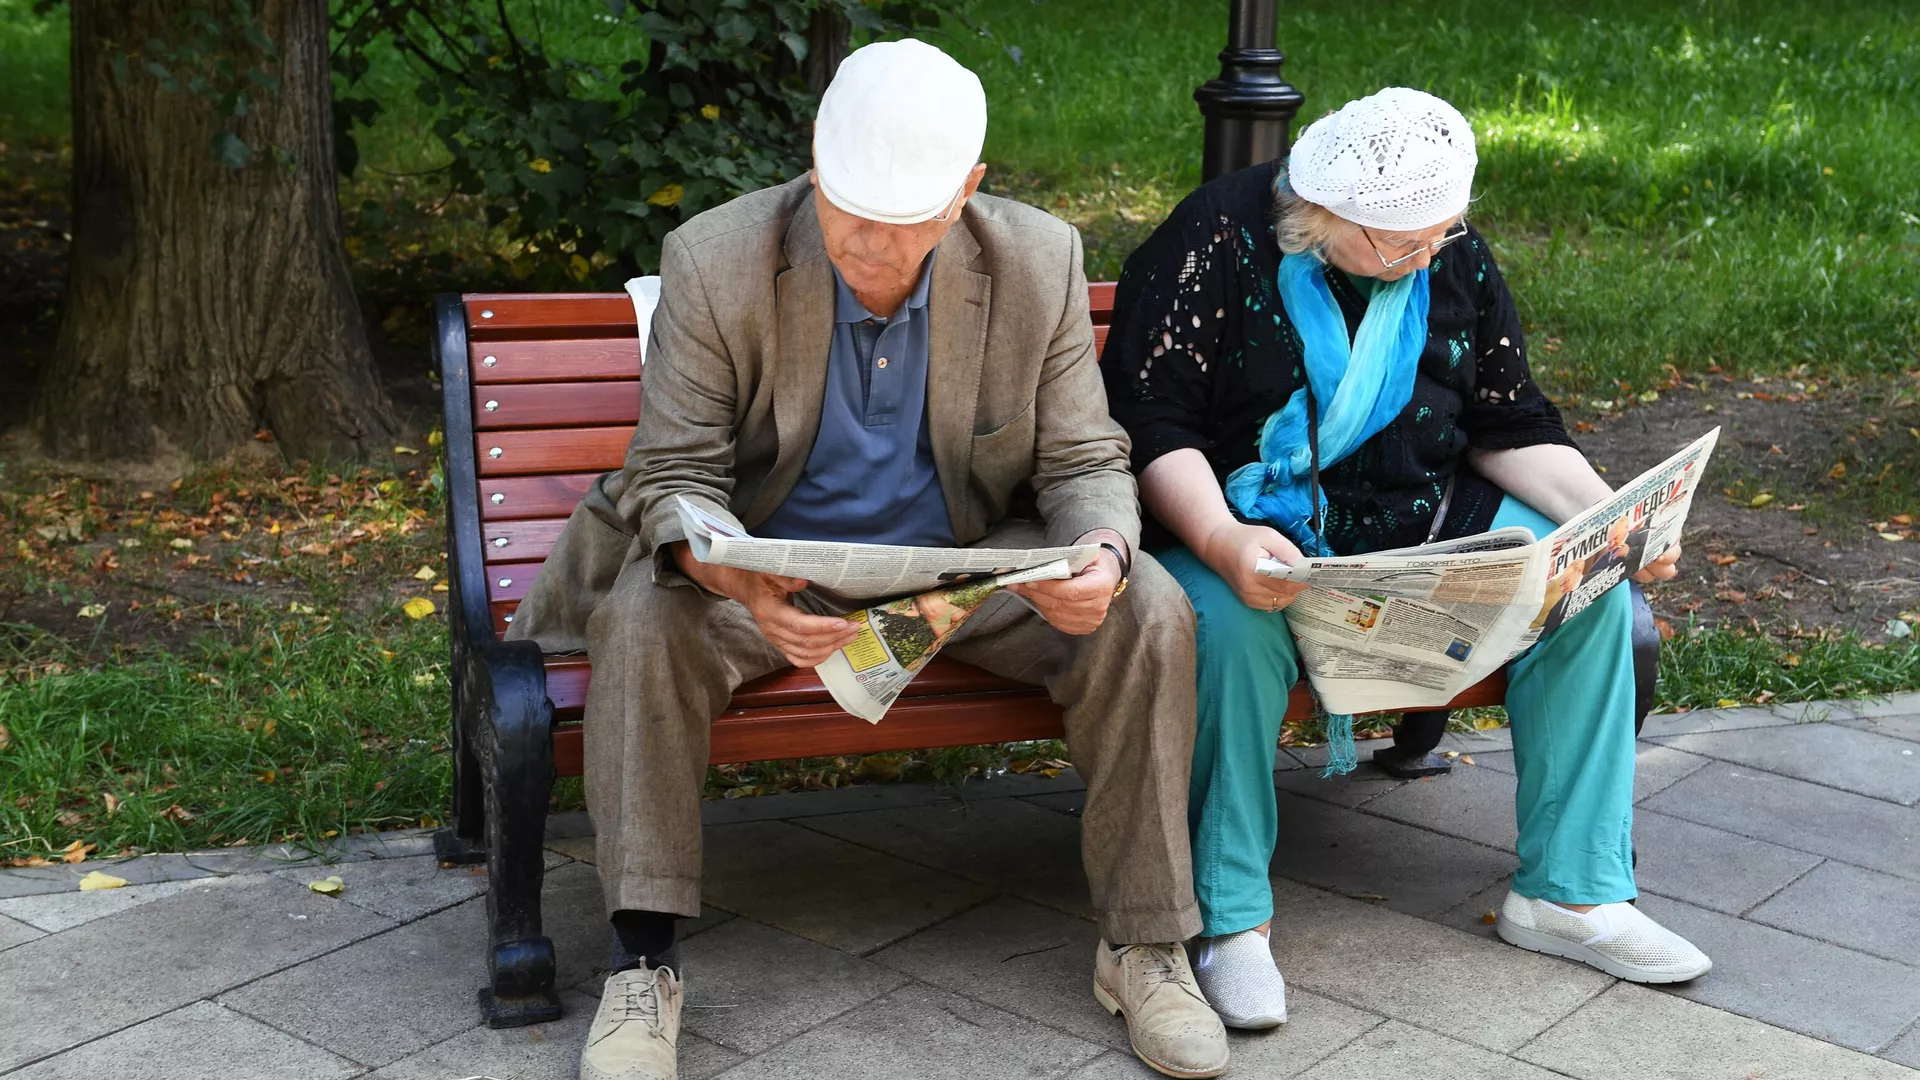 Пожилая пара в Грачевском парке Москвы - РИА Новости, 1920, 11.09.2019